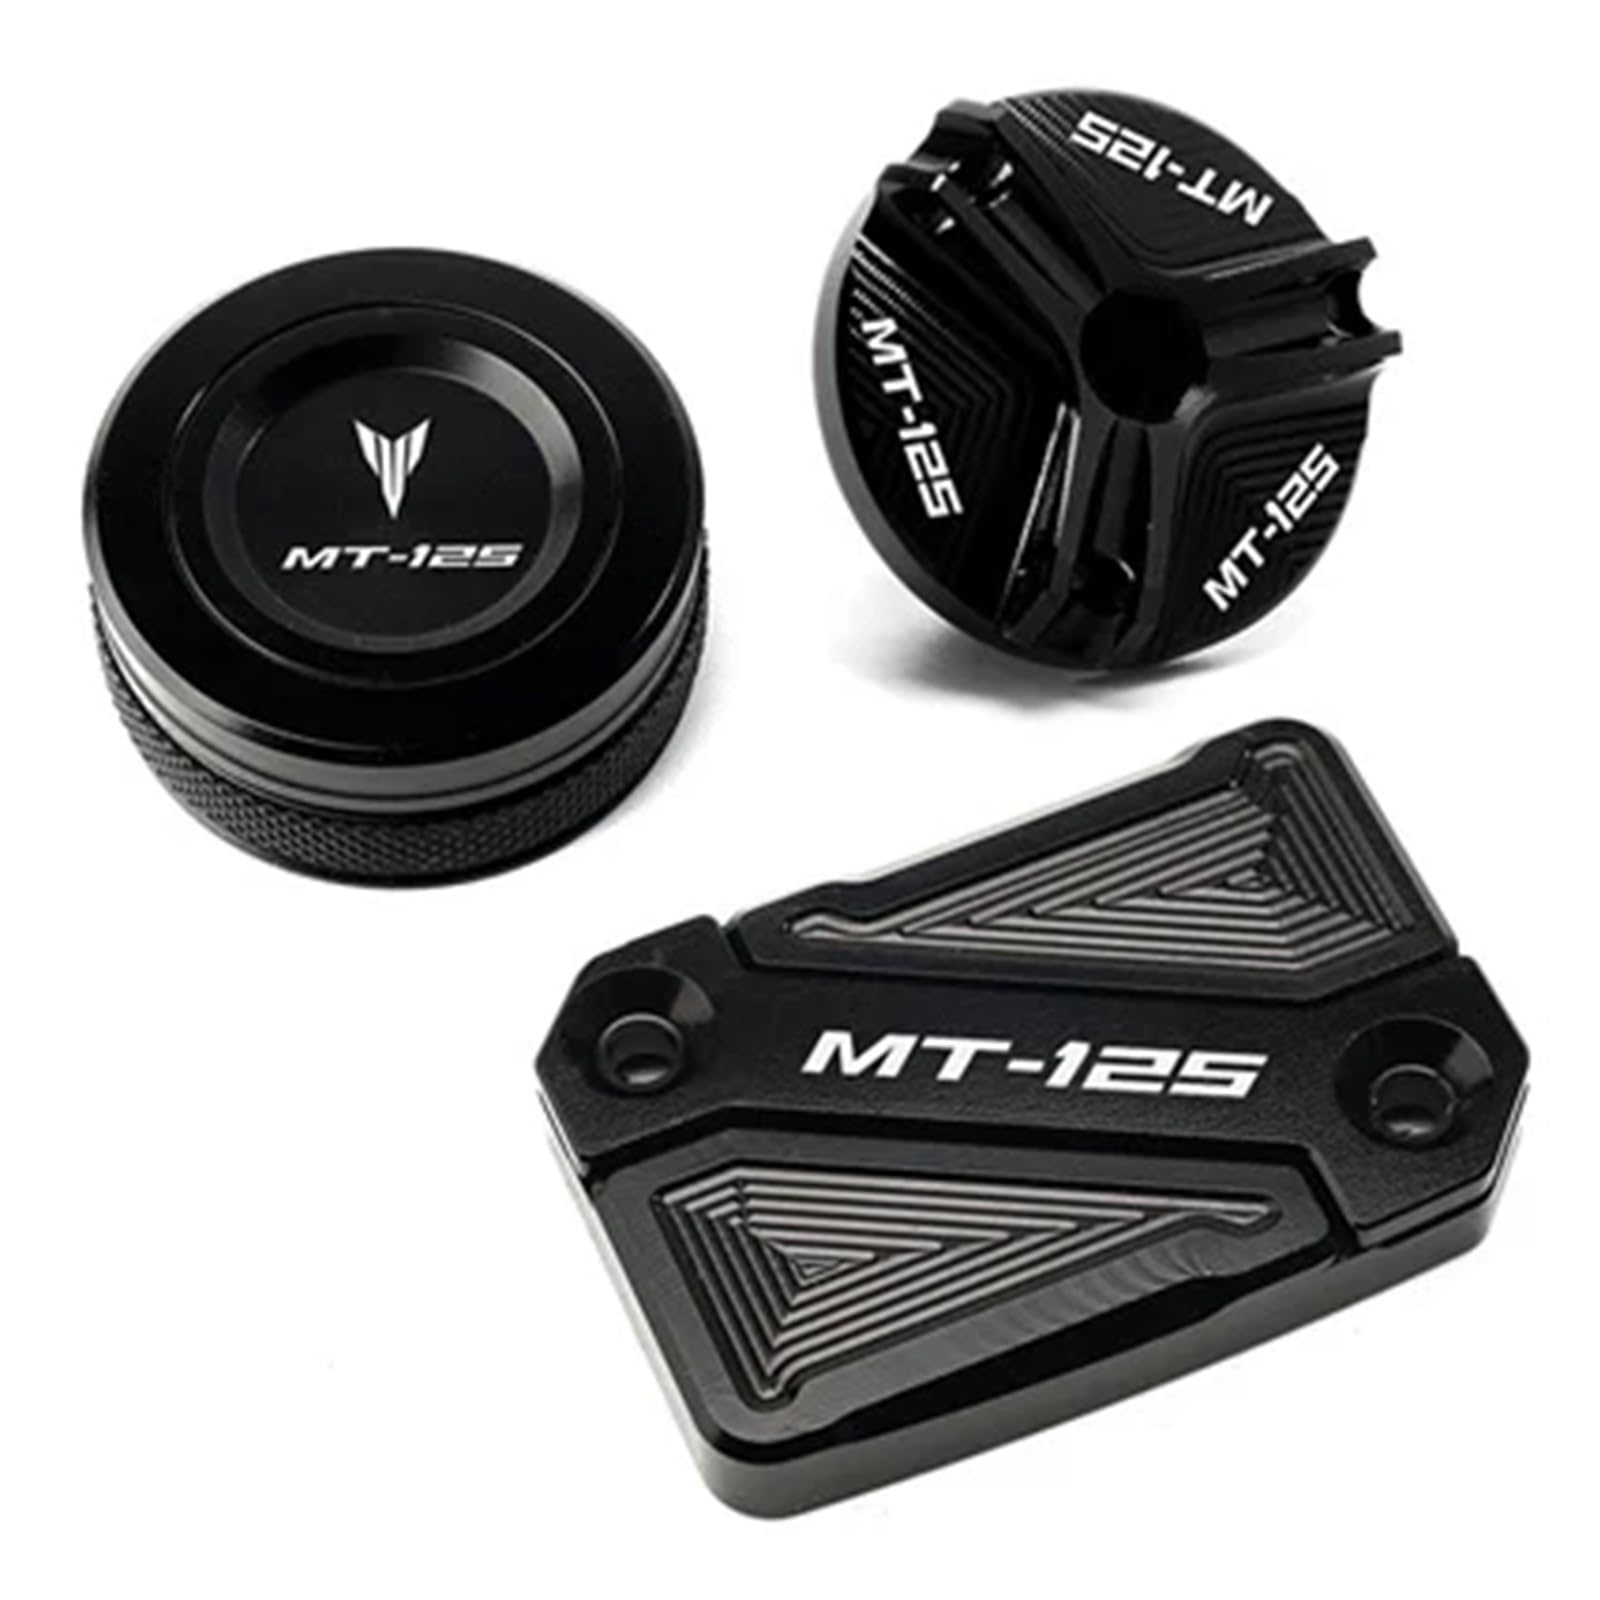 Kompatibel mit MT125 MT 125 MT-125 2008-2020 Motorradzubehör CNC für Hinten Bremsflüssigkeitskappe & Motoröl Kappe Plug Cover Guard (Color : FRBCG Black) von SyuFre